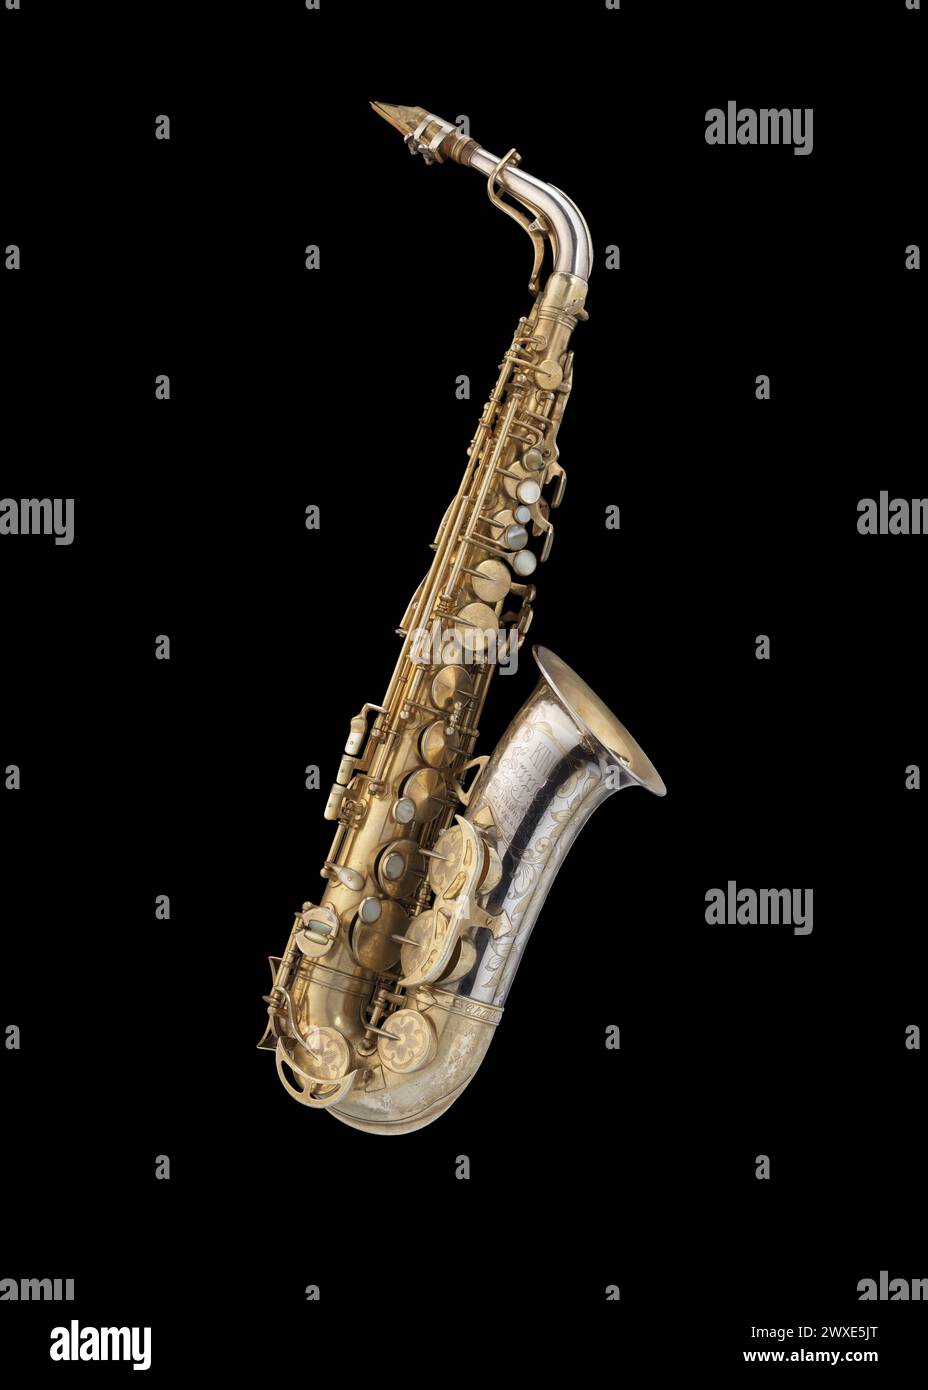 Das Altsaxophon wurde von dem Jazz-Musiker Charlie Parker gespielt. Das Saxophon besteht aus sieben Teilen: Einem Körper, einem Hals, zwei Mundstücken, zwei Ligaturen und einem Stockfoto